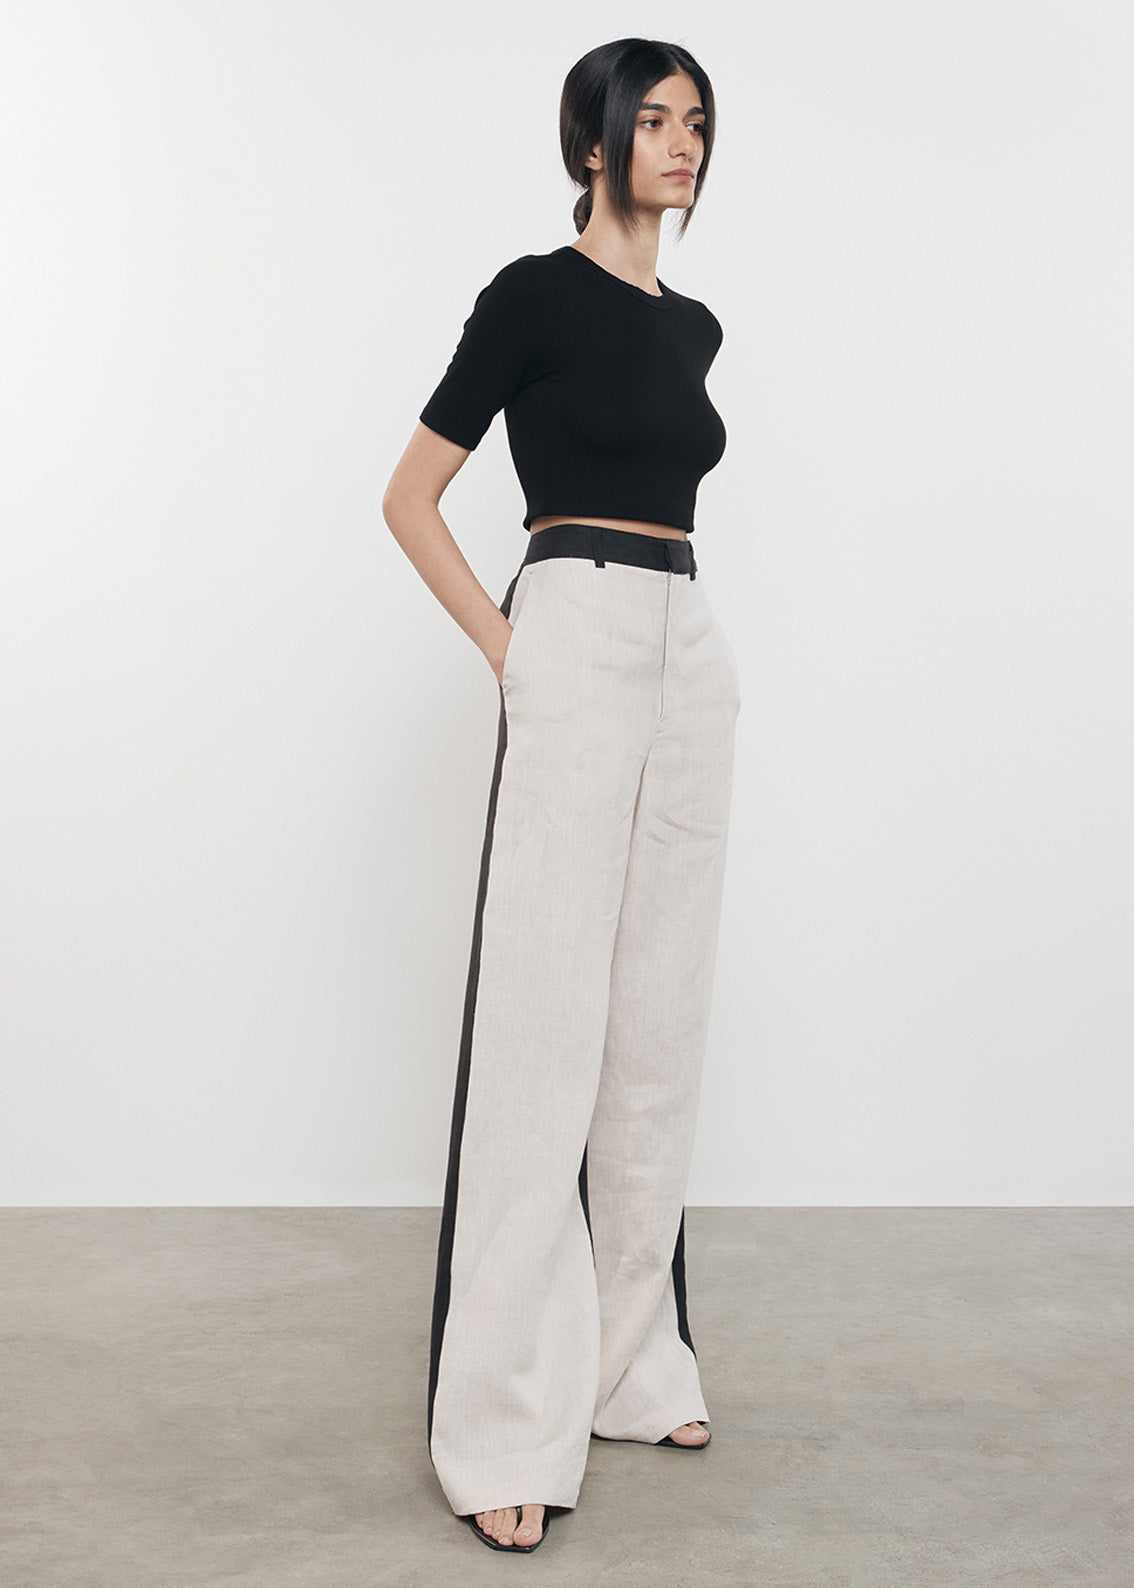 Linen Colorblock Trouser | Flax/Black